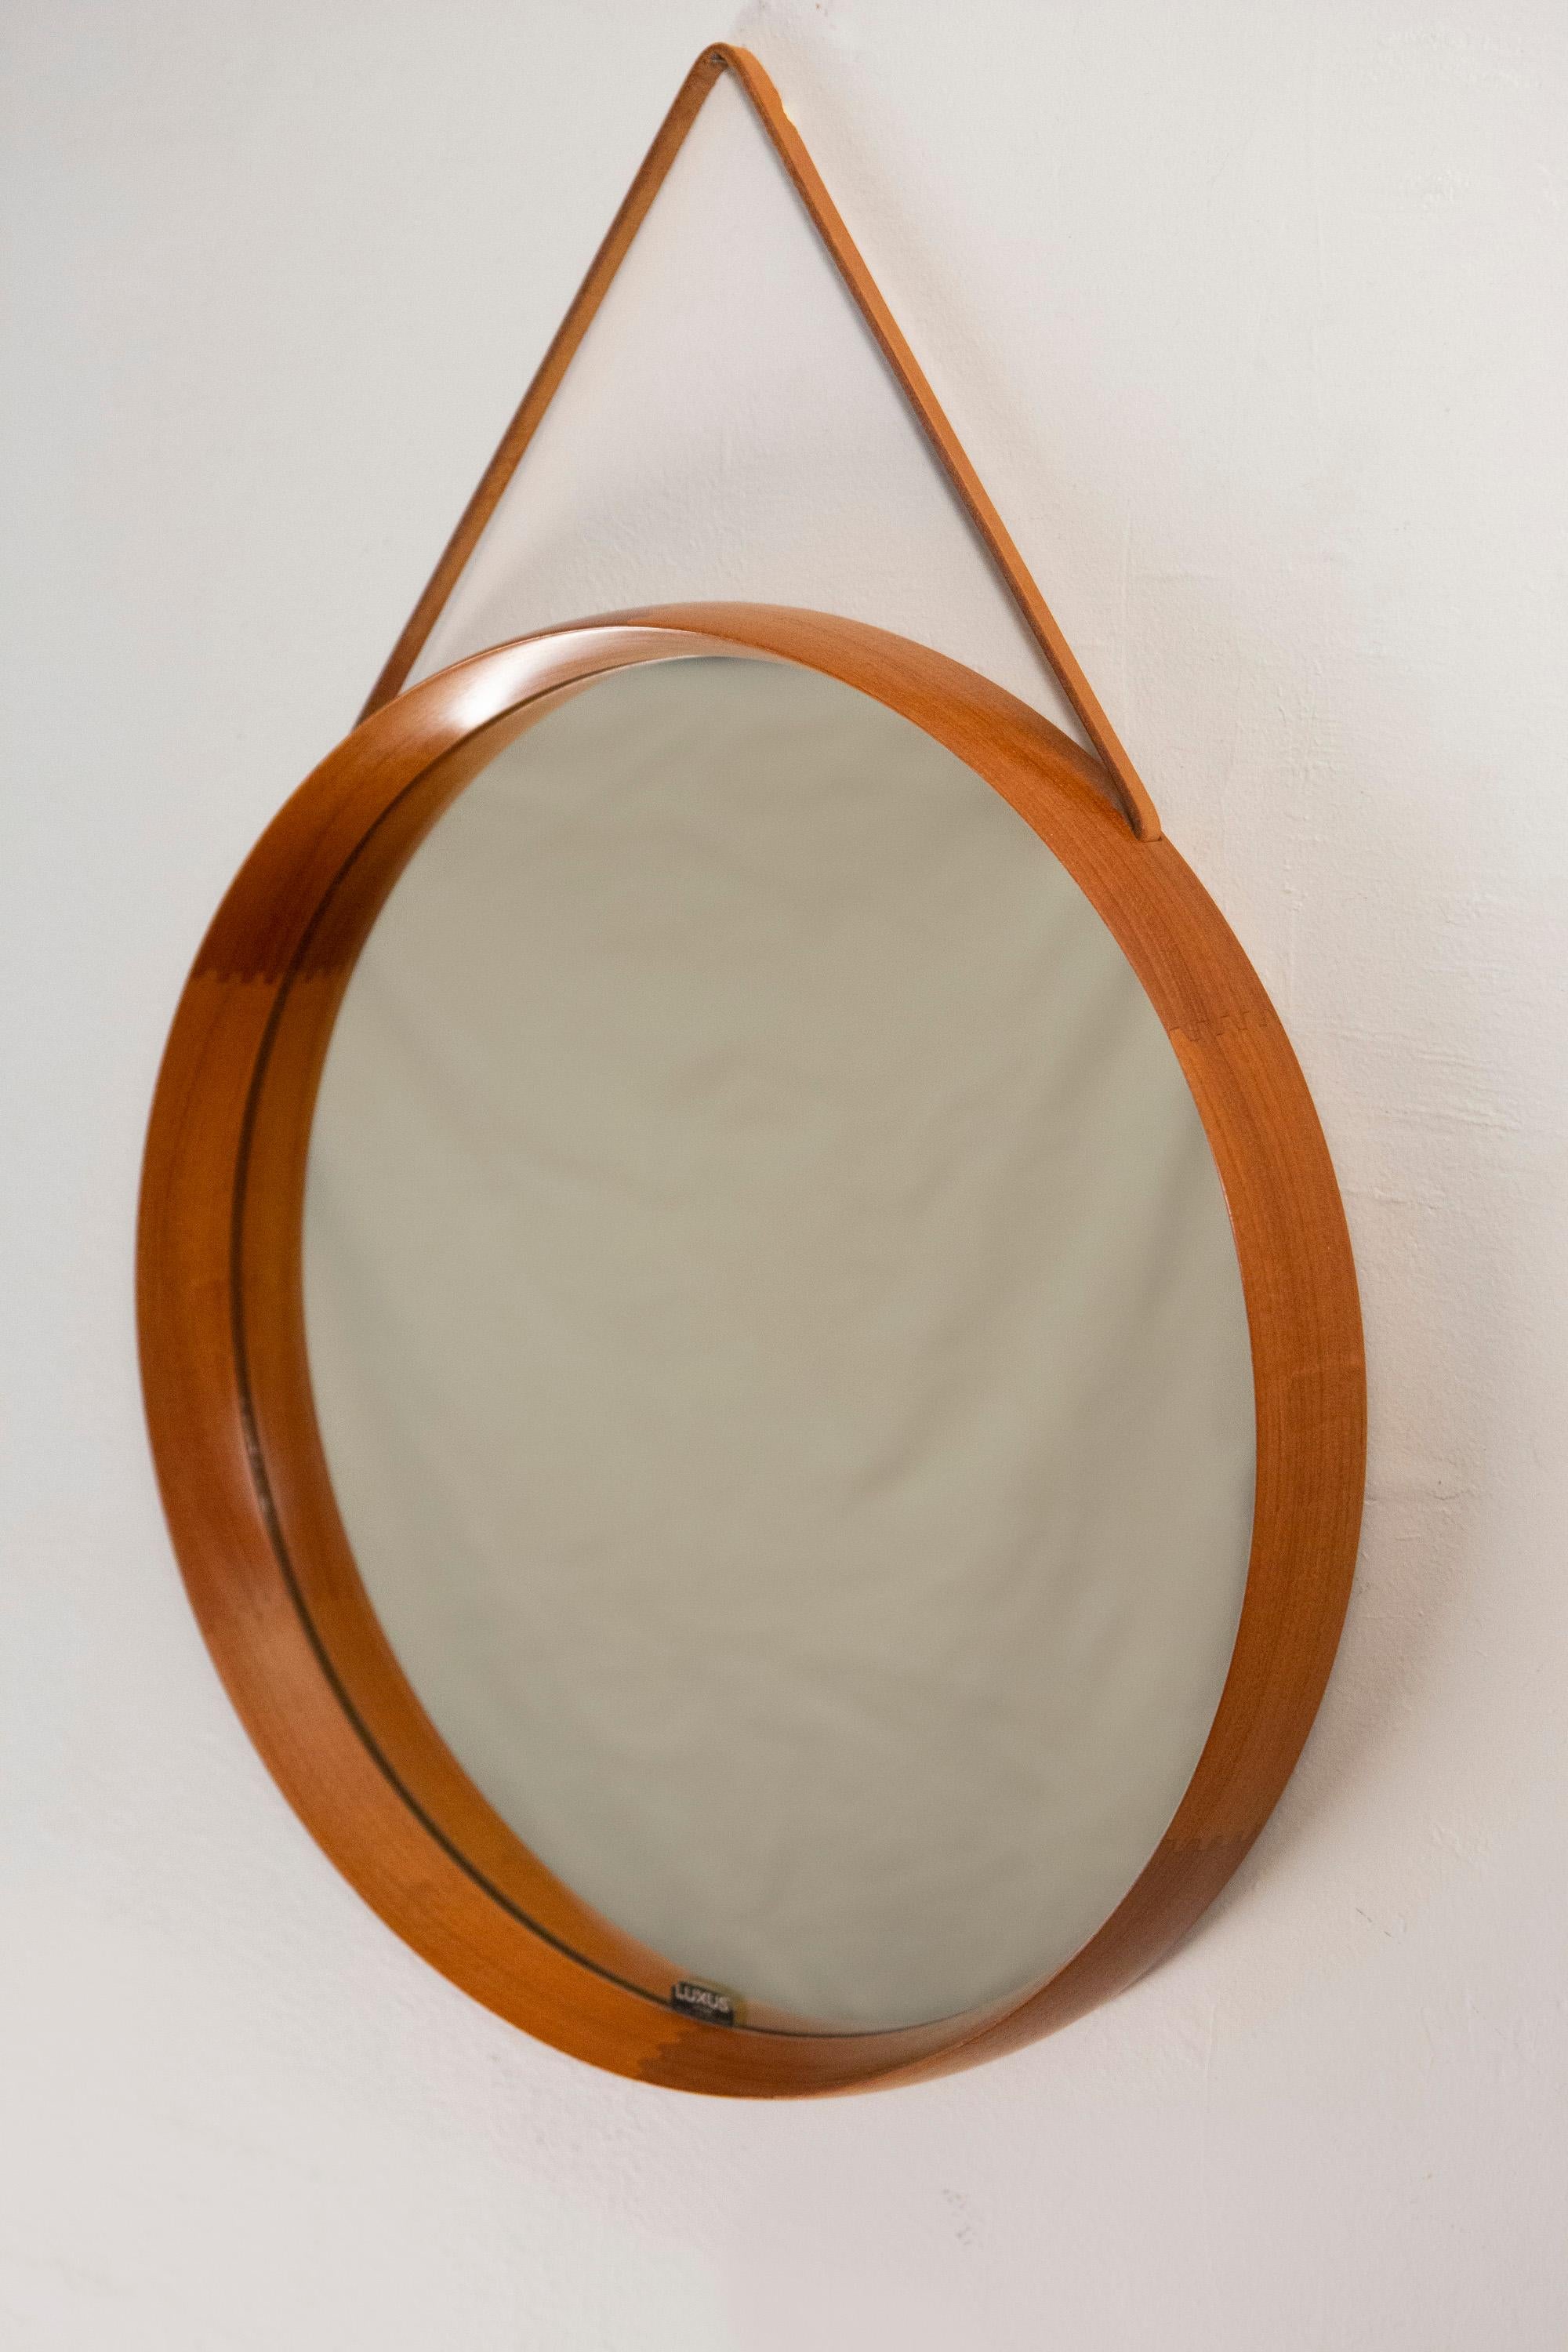 Mid-Century Modern Round Teak Mirror by Uno and Osten Kristiansson for Luxus Vittsjö, Sweden, 1960s For Sale